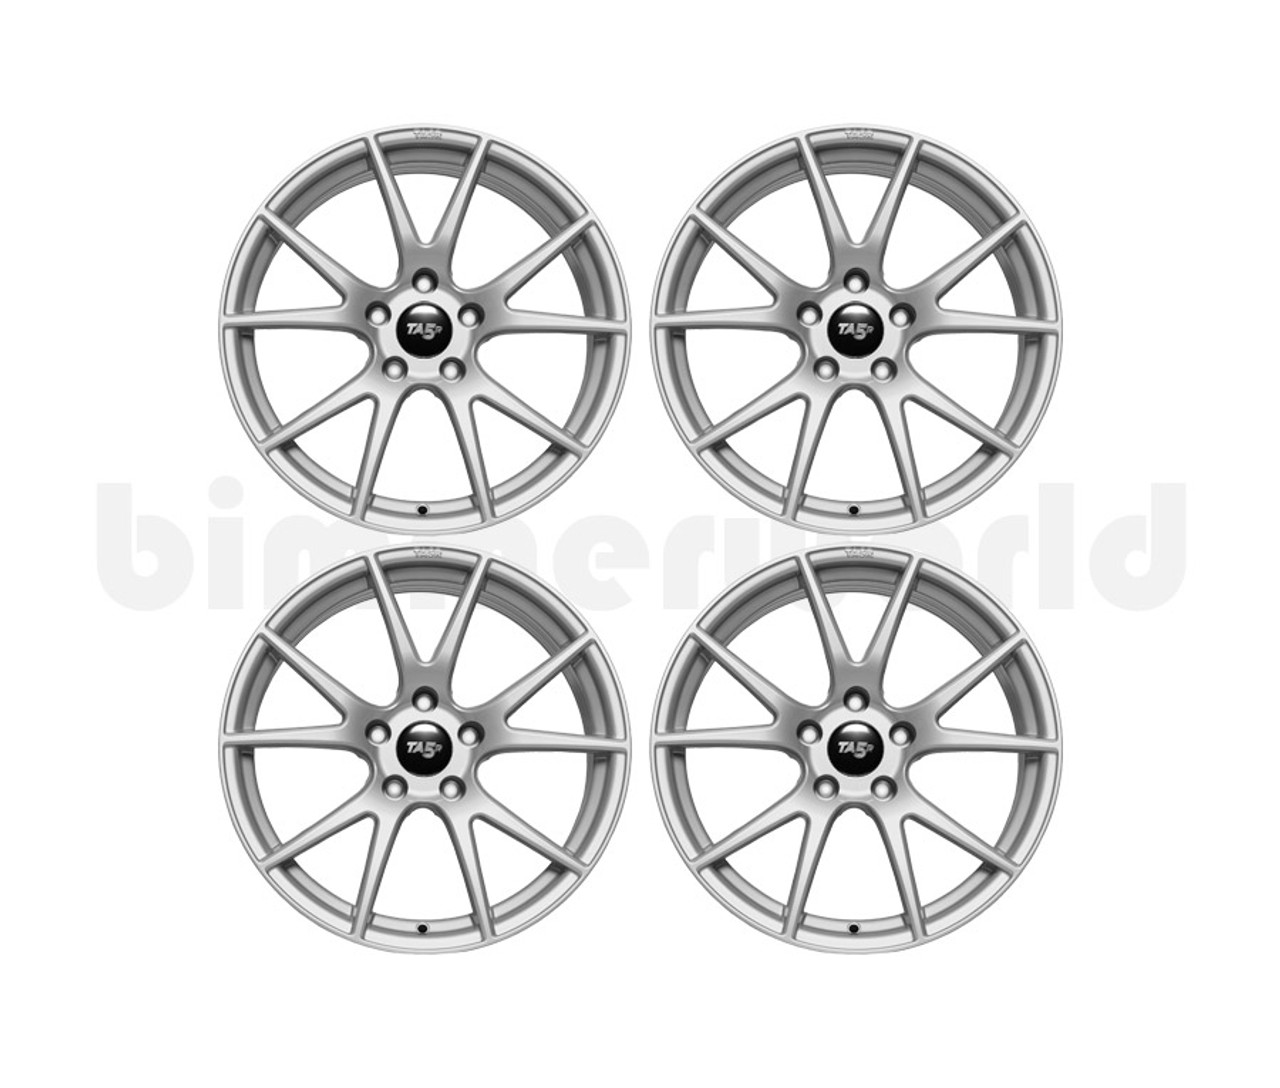 BimmerWorld TA5R 18x9/10 Staggered Wheel Set - E9X 325i/328i/330i/335i  - Gloss Gunmetal